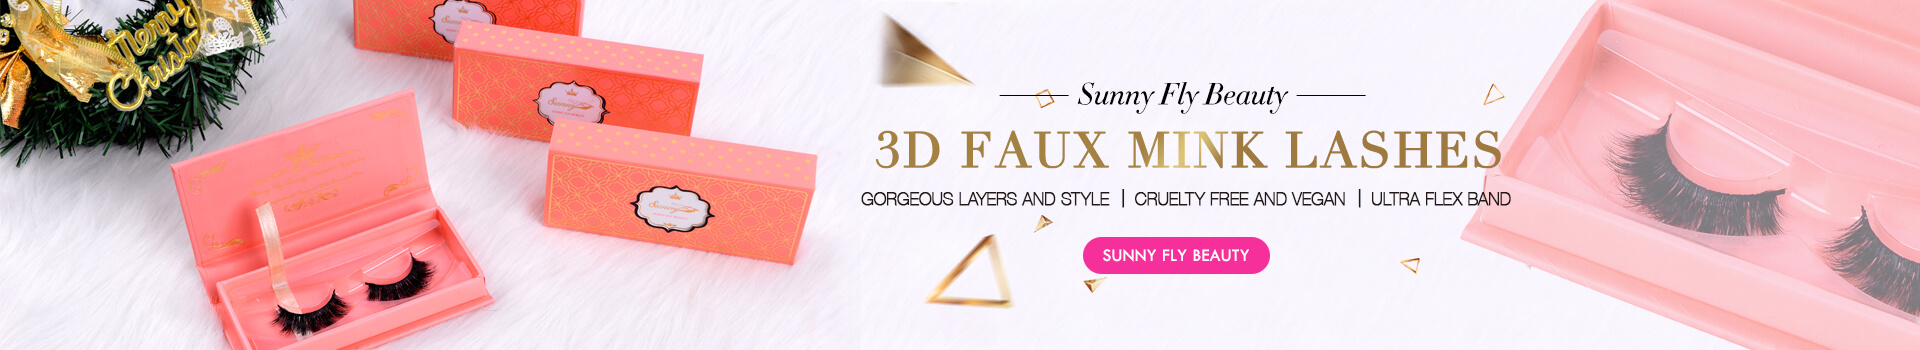 3D Faux Mink Lashes SD69